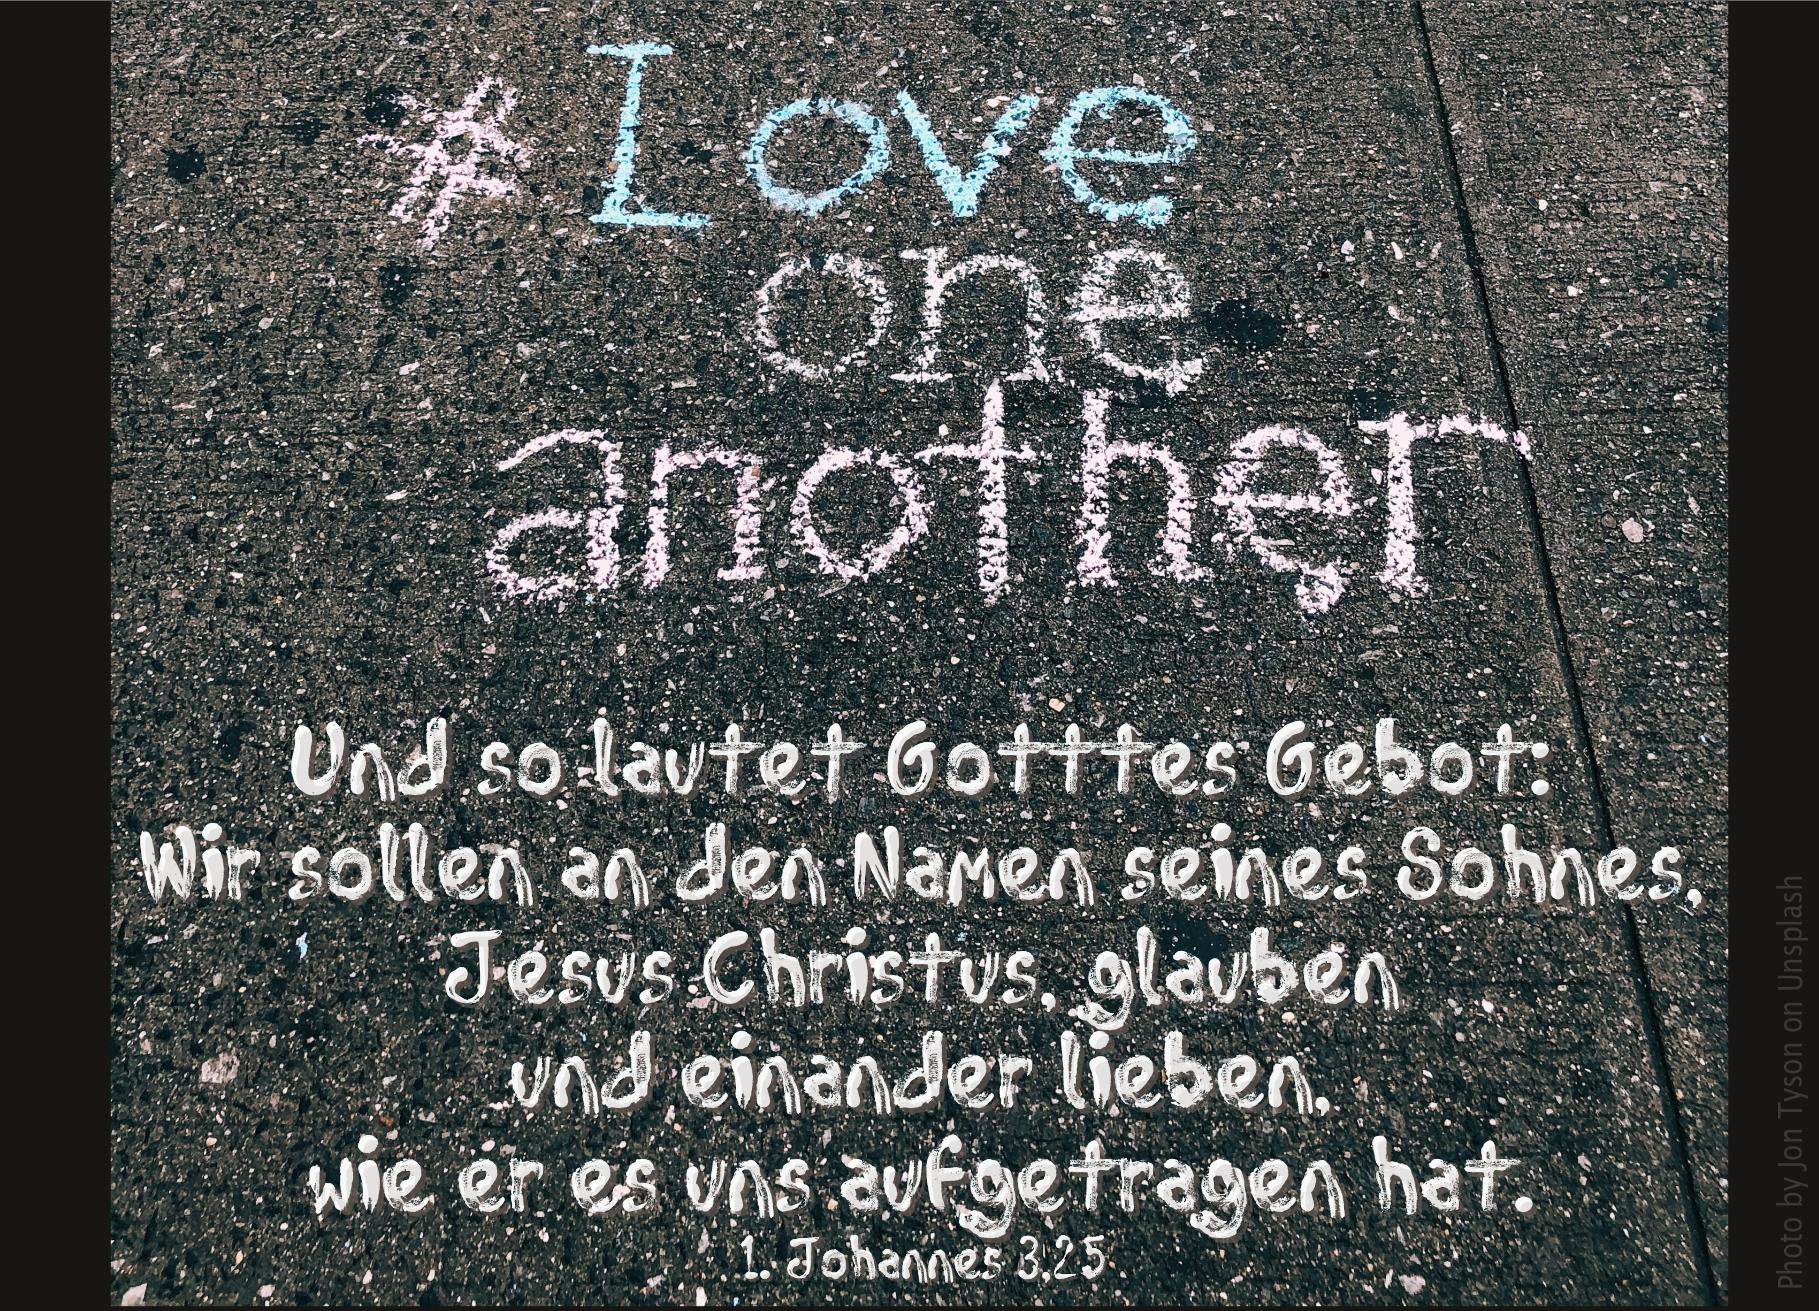 "schrift_auf_boardstein_love_one_another_erwartet_bibelhoerbuch_einander_lieben"